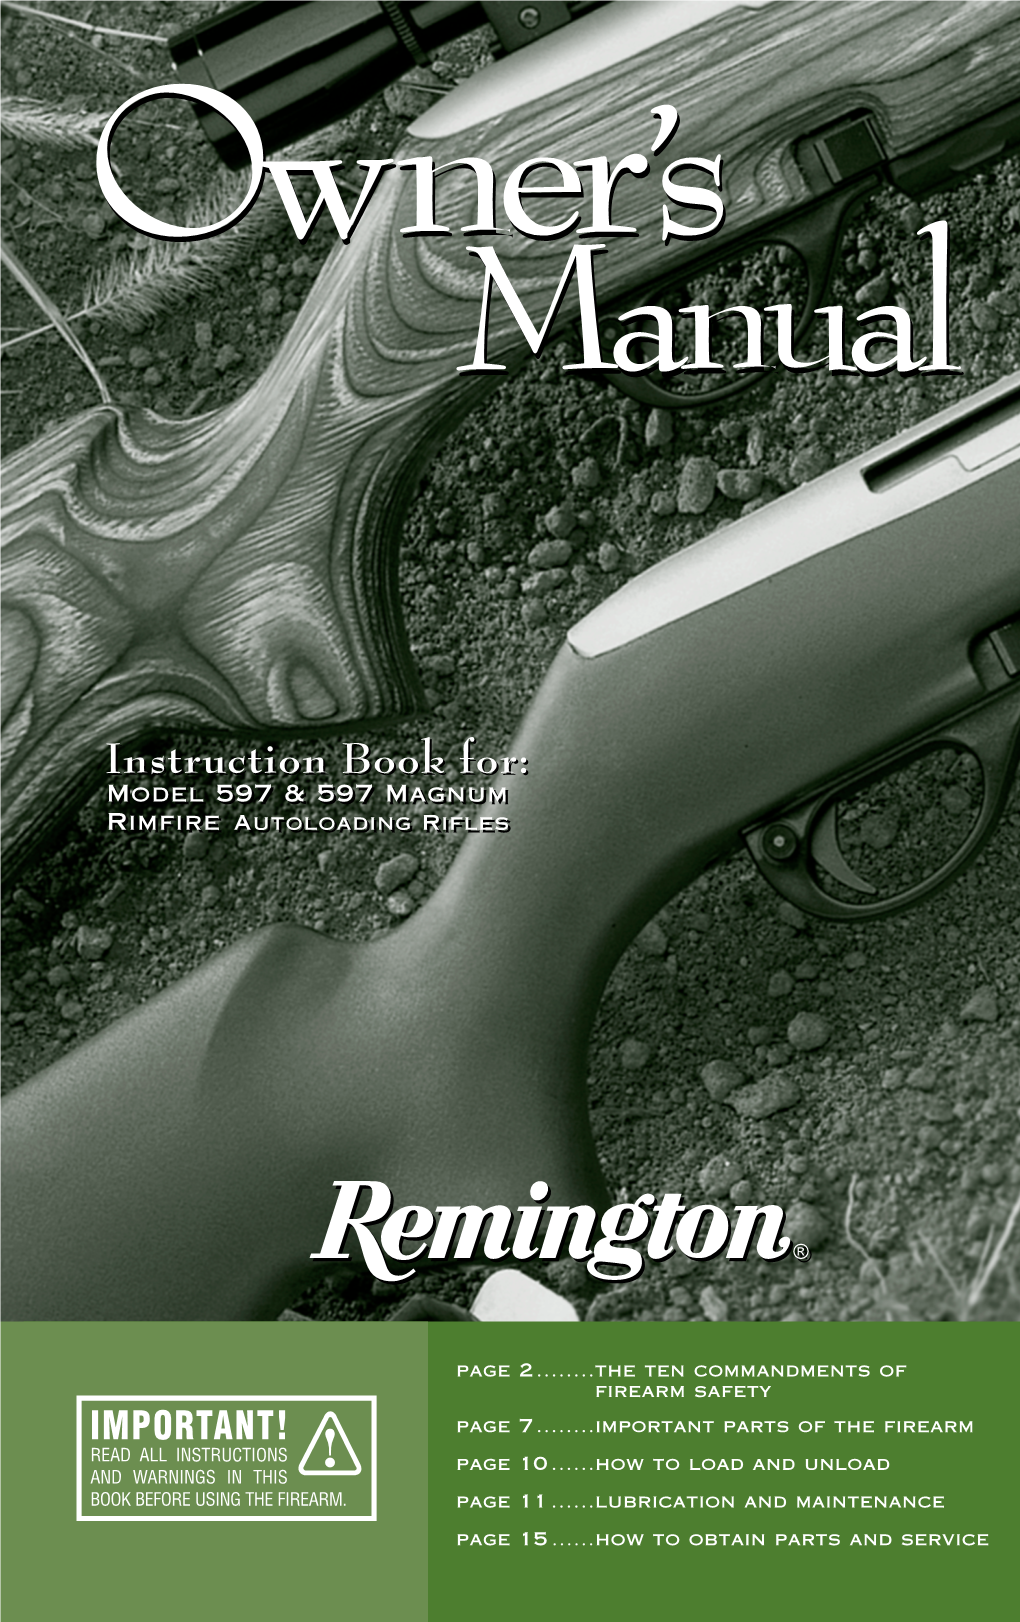 Model 597 & 597 Magnum Rimfire Autoloading Rifles